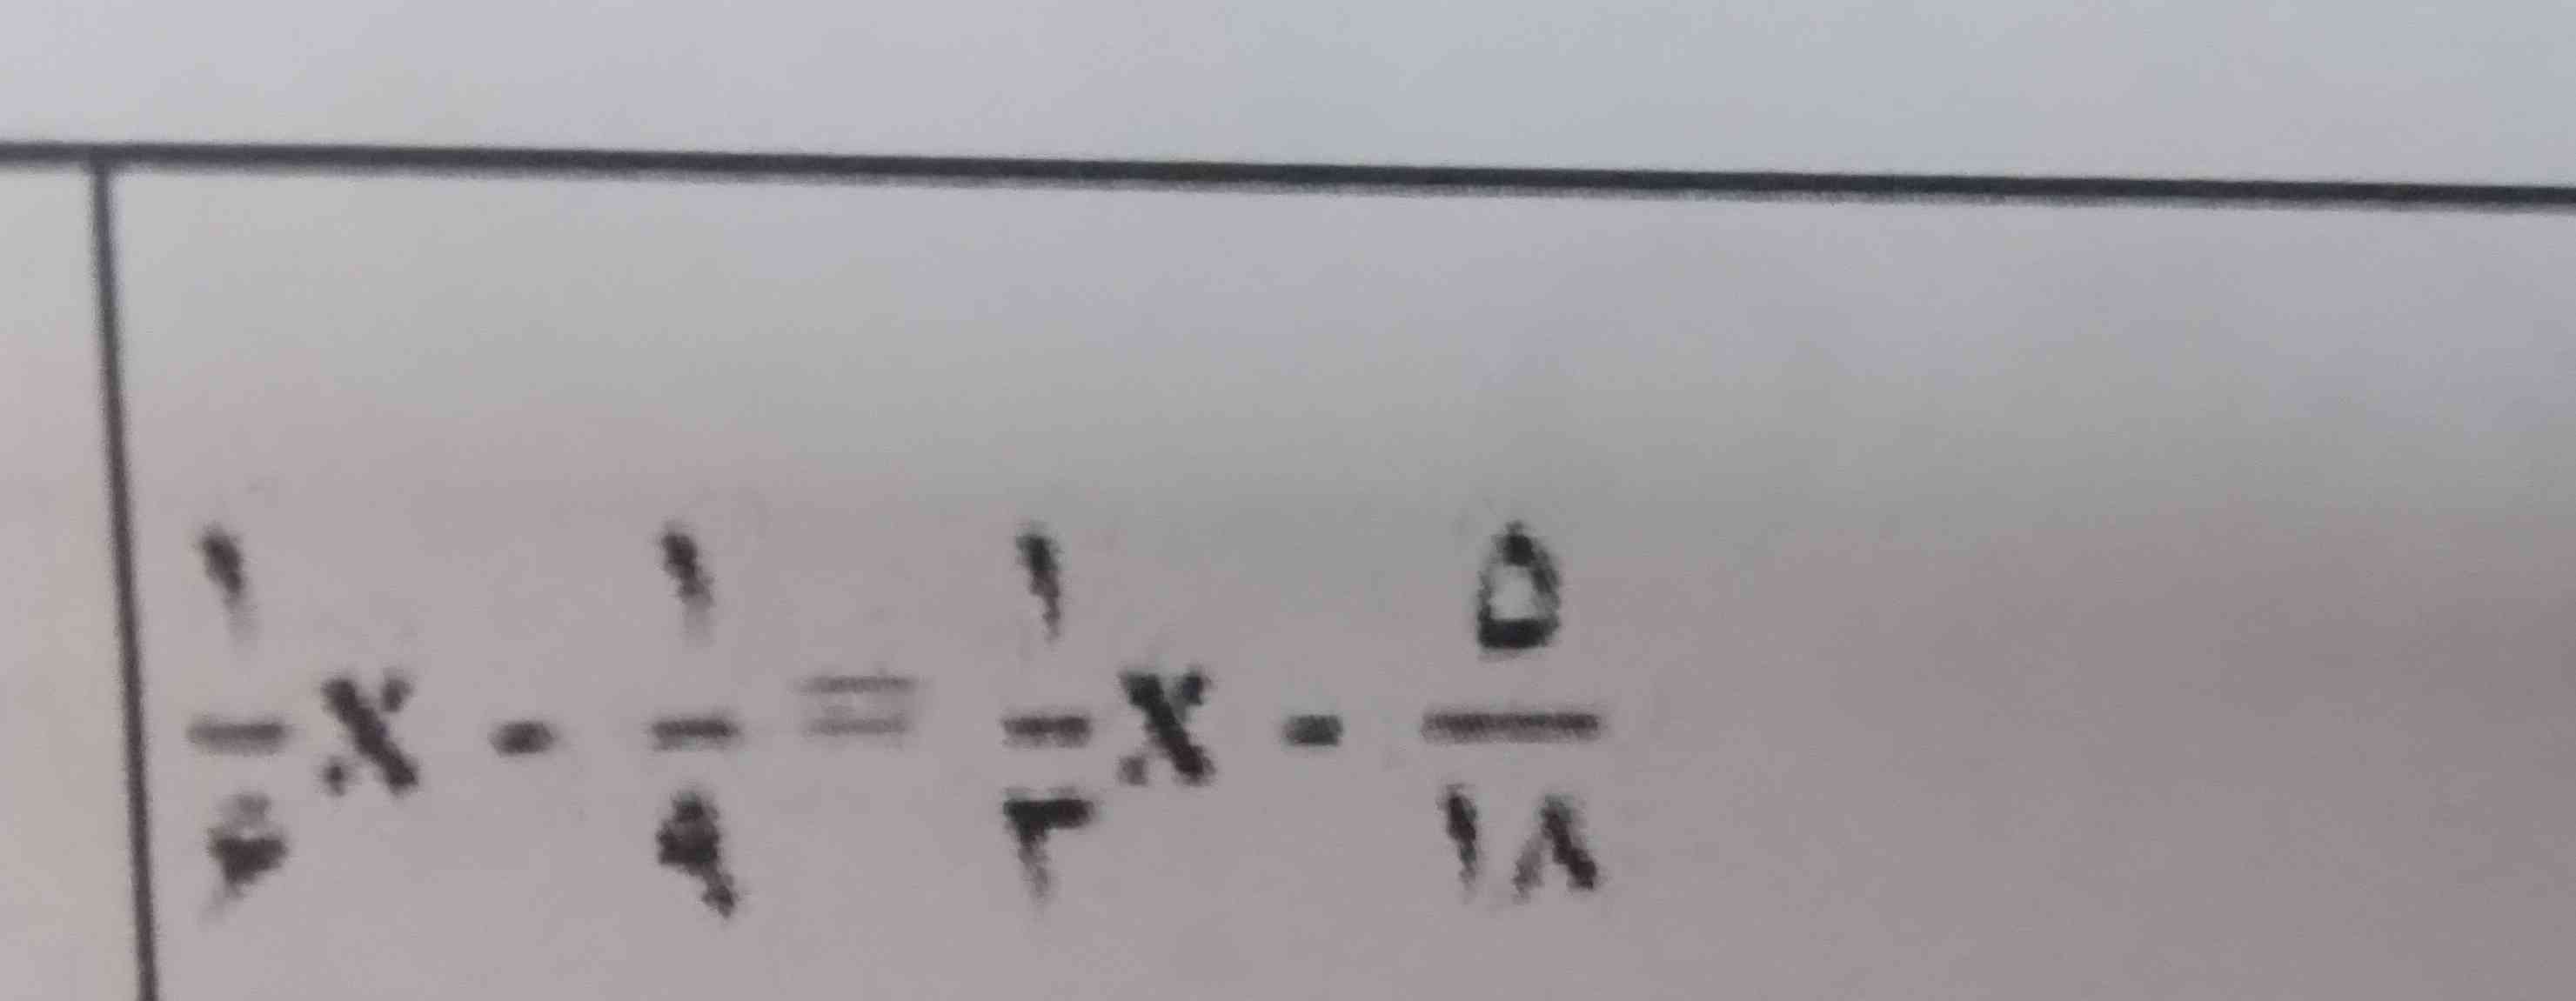 معادله رو لطفا حل کنید
تاج میدم